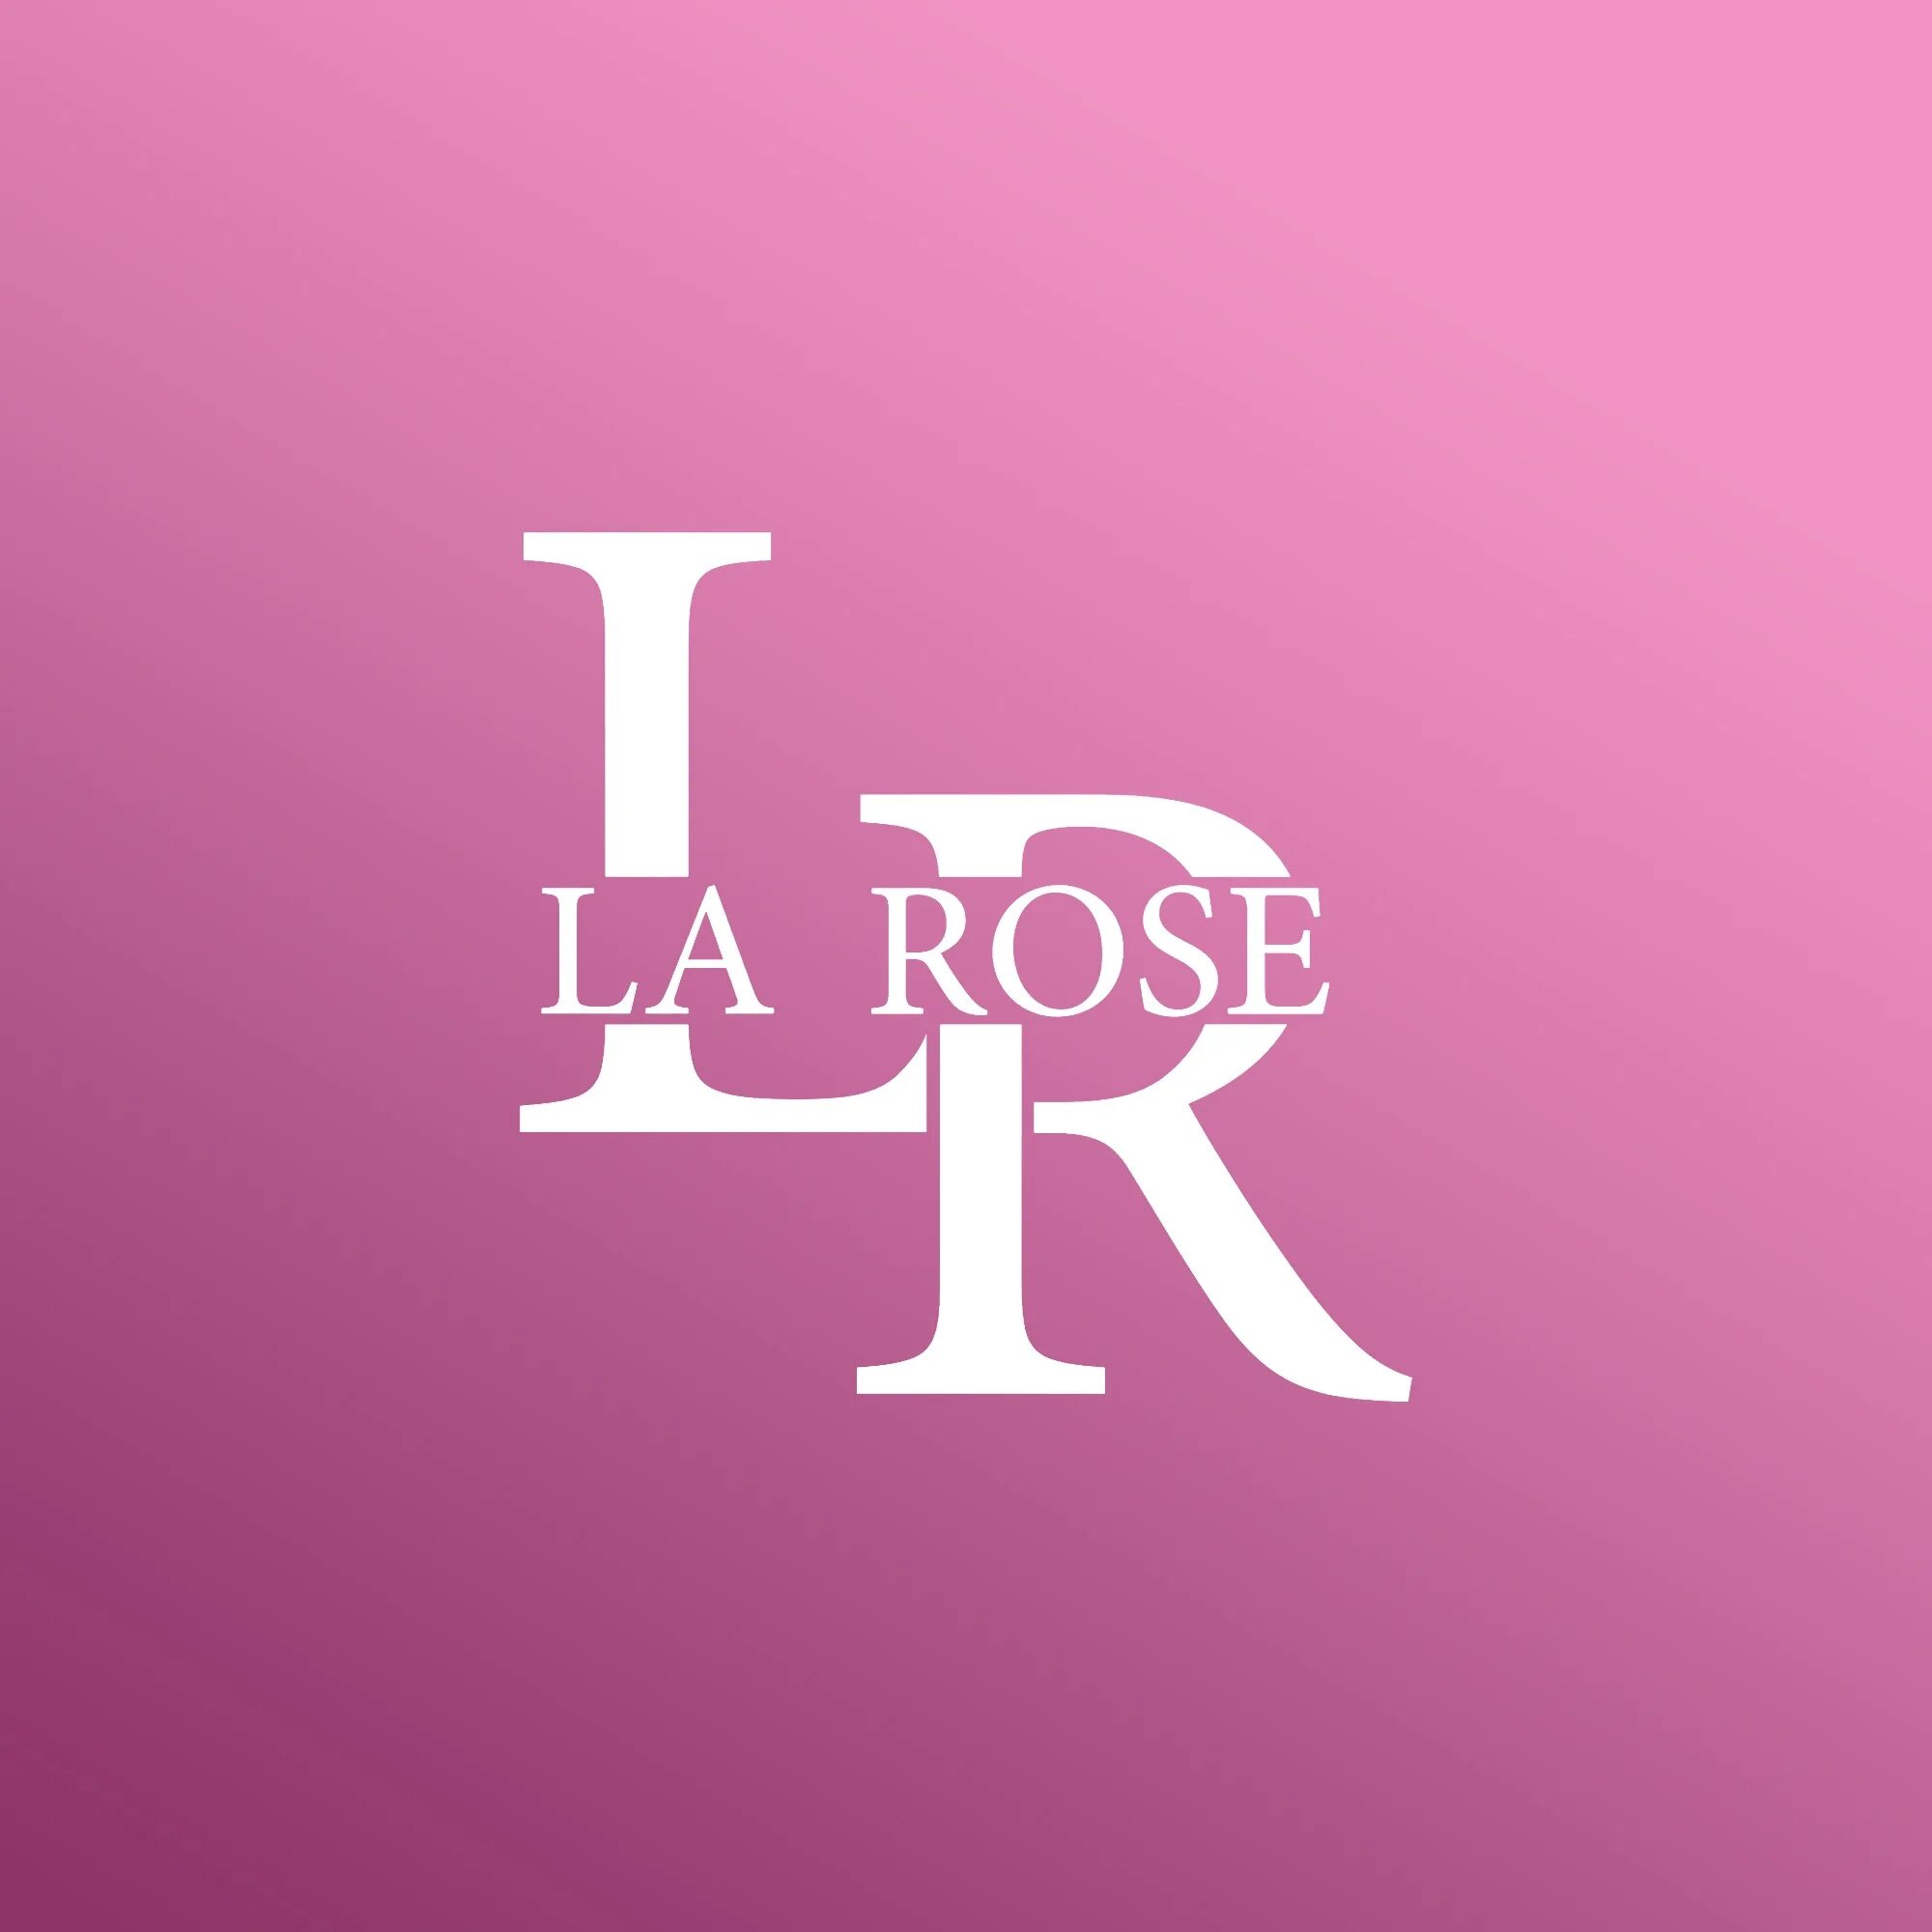 La rose est. La Rose цветы. Ля Роуз Новосибирск. La Rose логотип. Новосибирск Советская улица 55 la Rose.